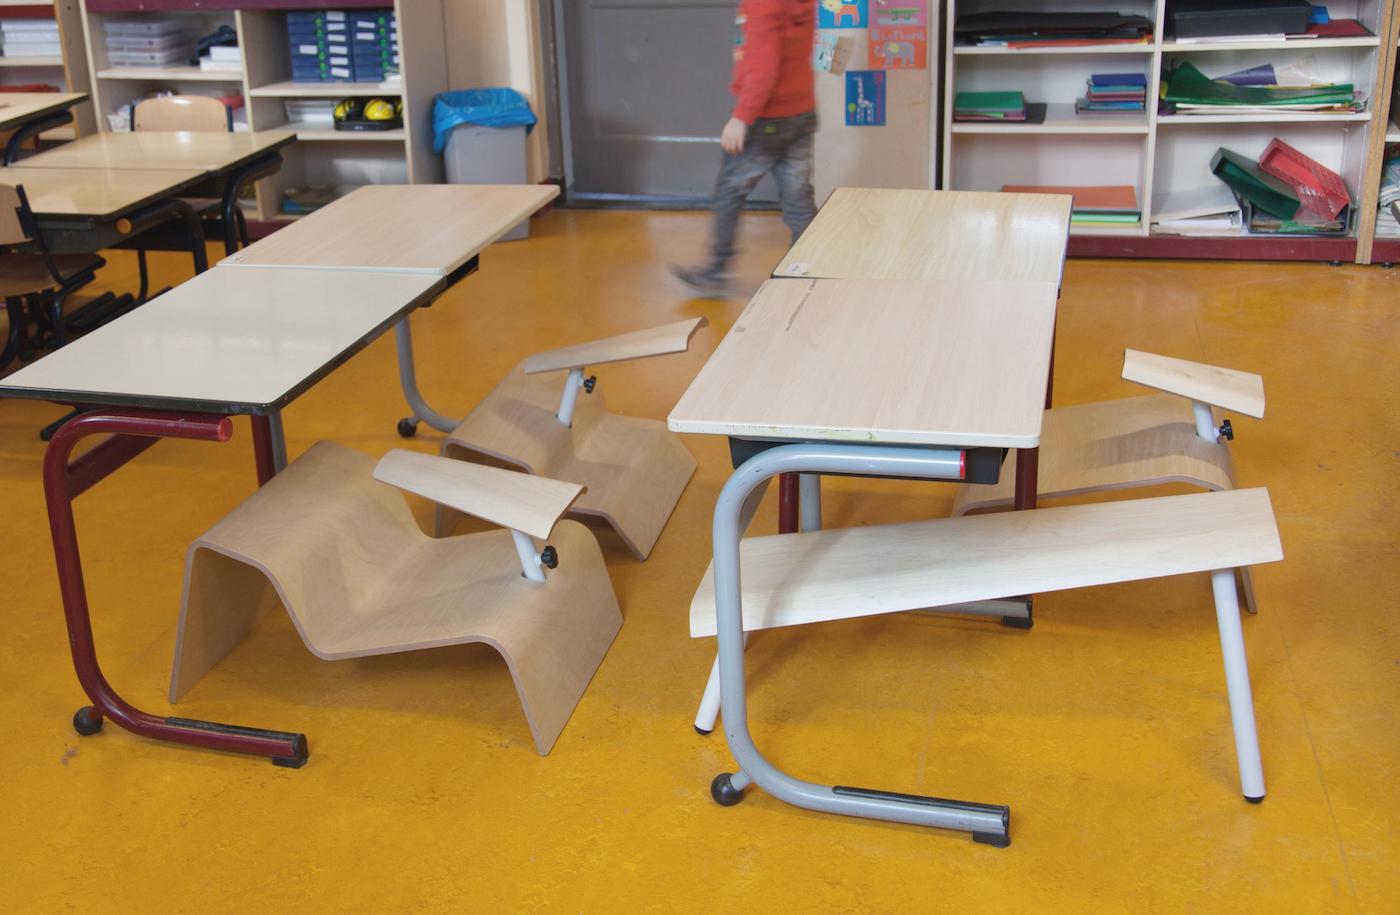 Le studio Lancelot a imaginé des chaises pour que les enfants puissent adopter plusieurs postures en classe